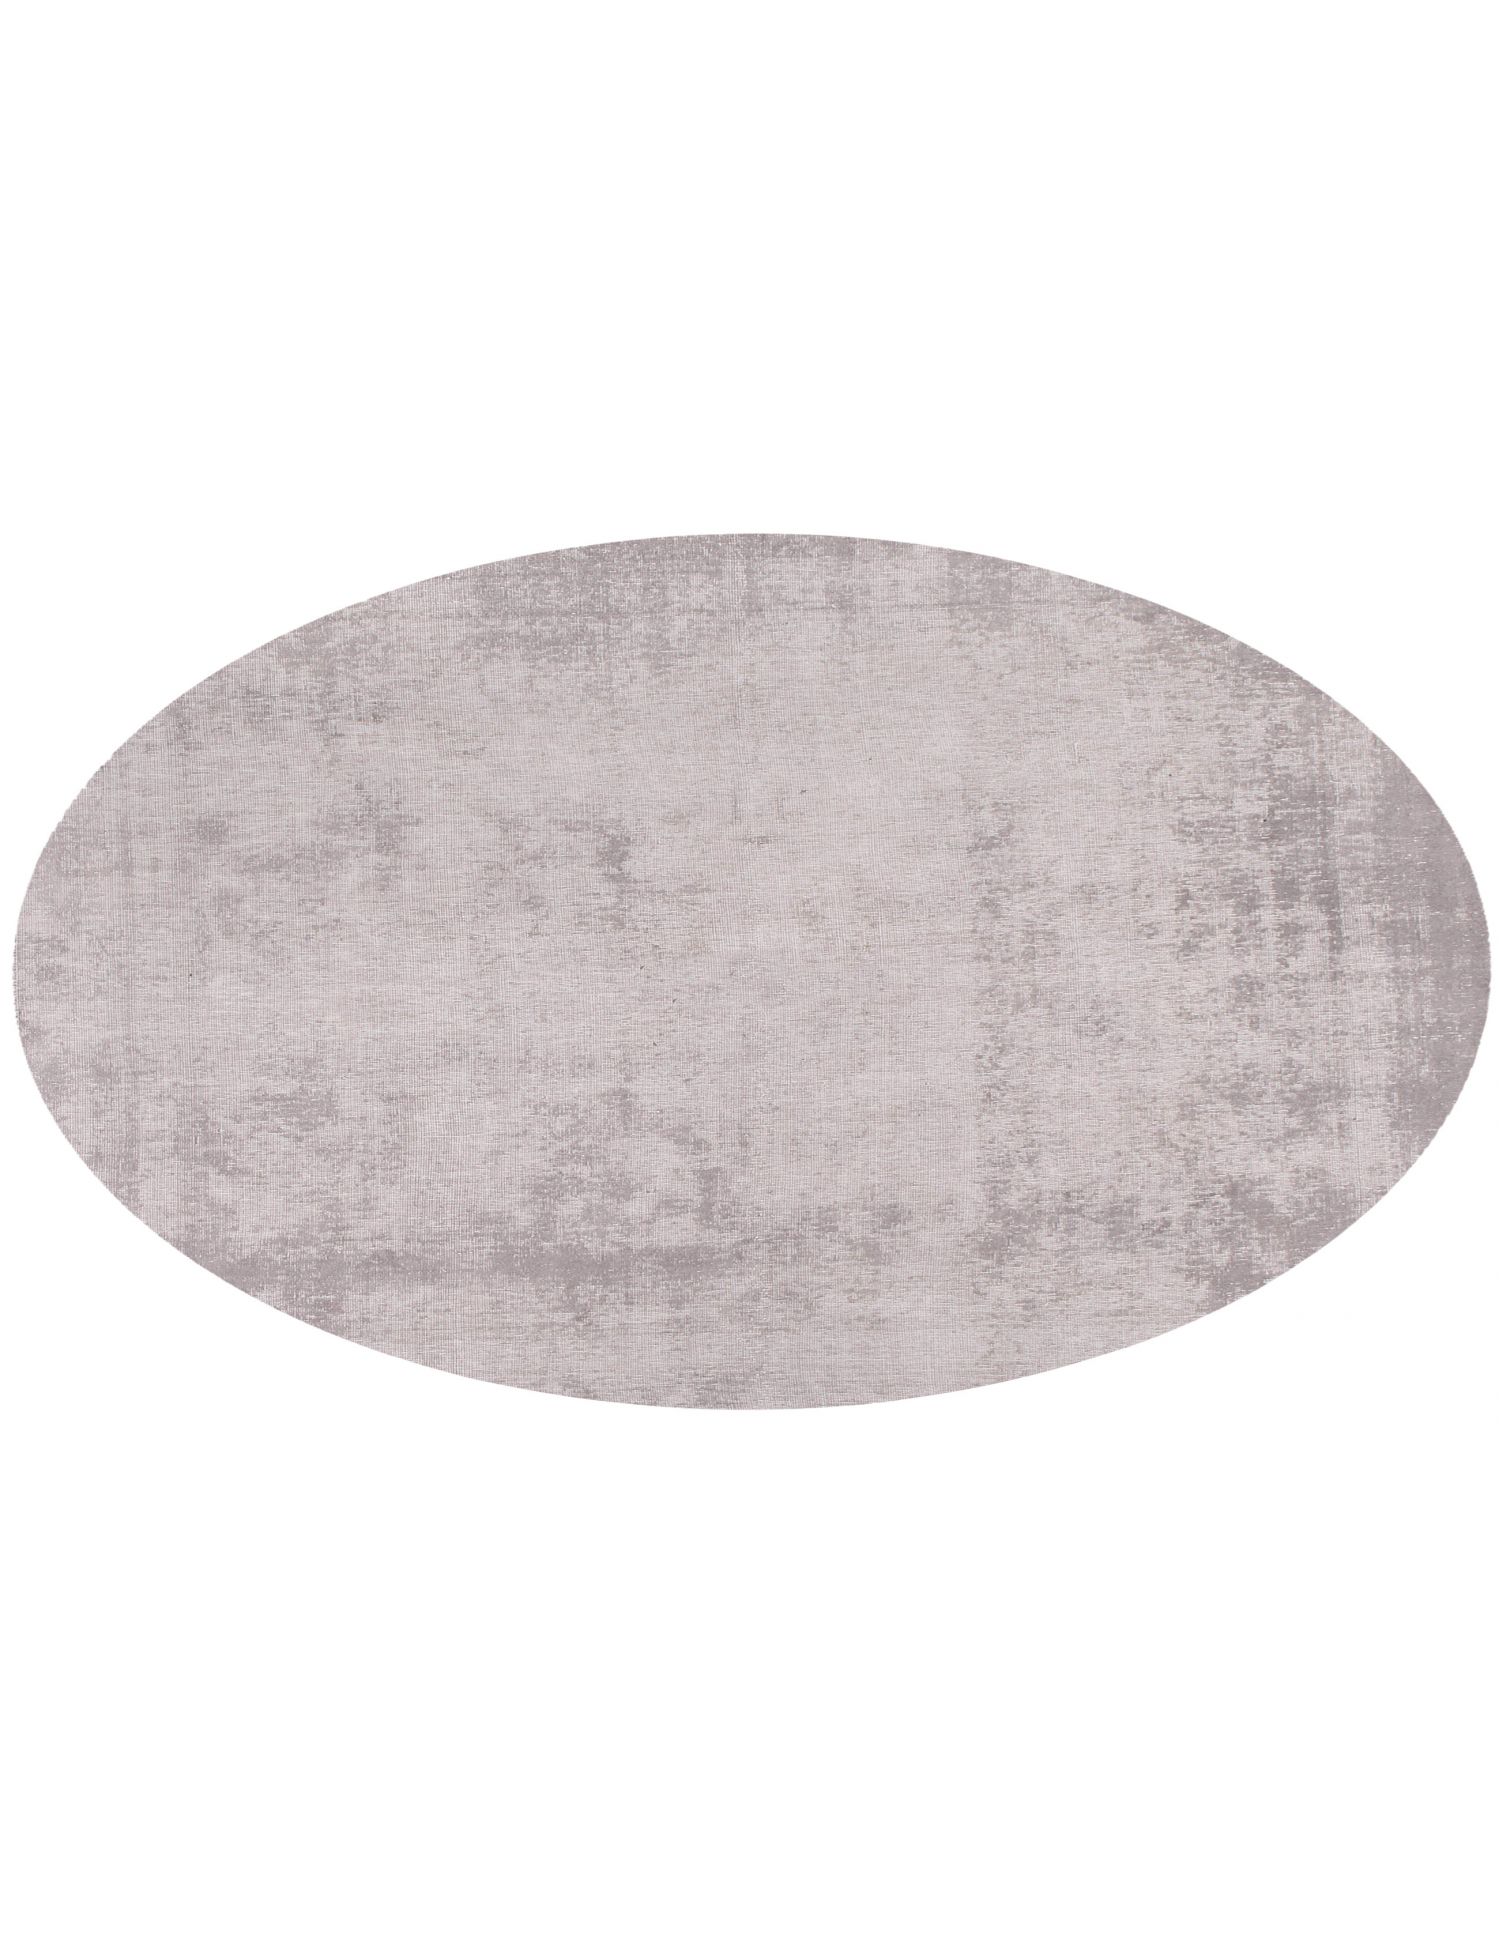 Rund  Vintage Teppich  grau <br/>257 x 257 cm